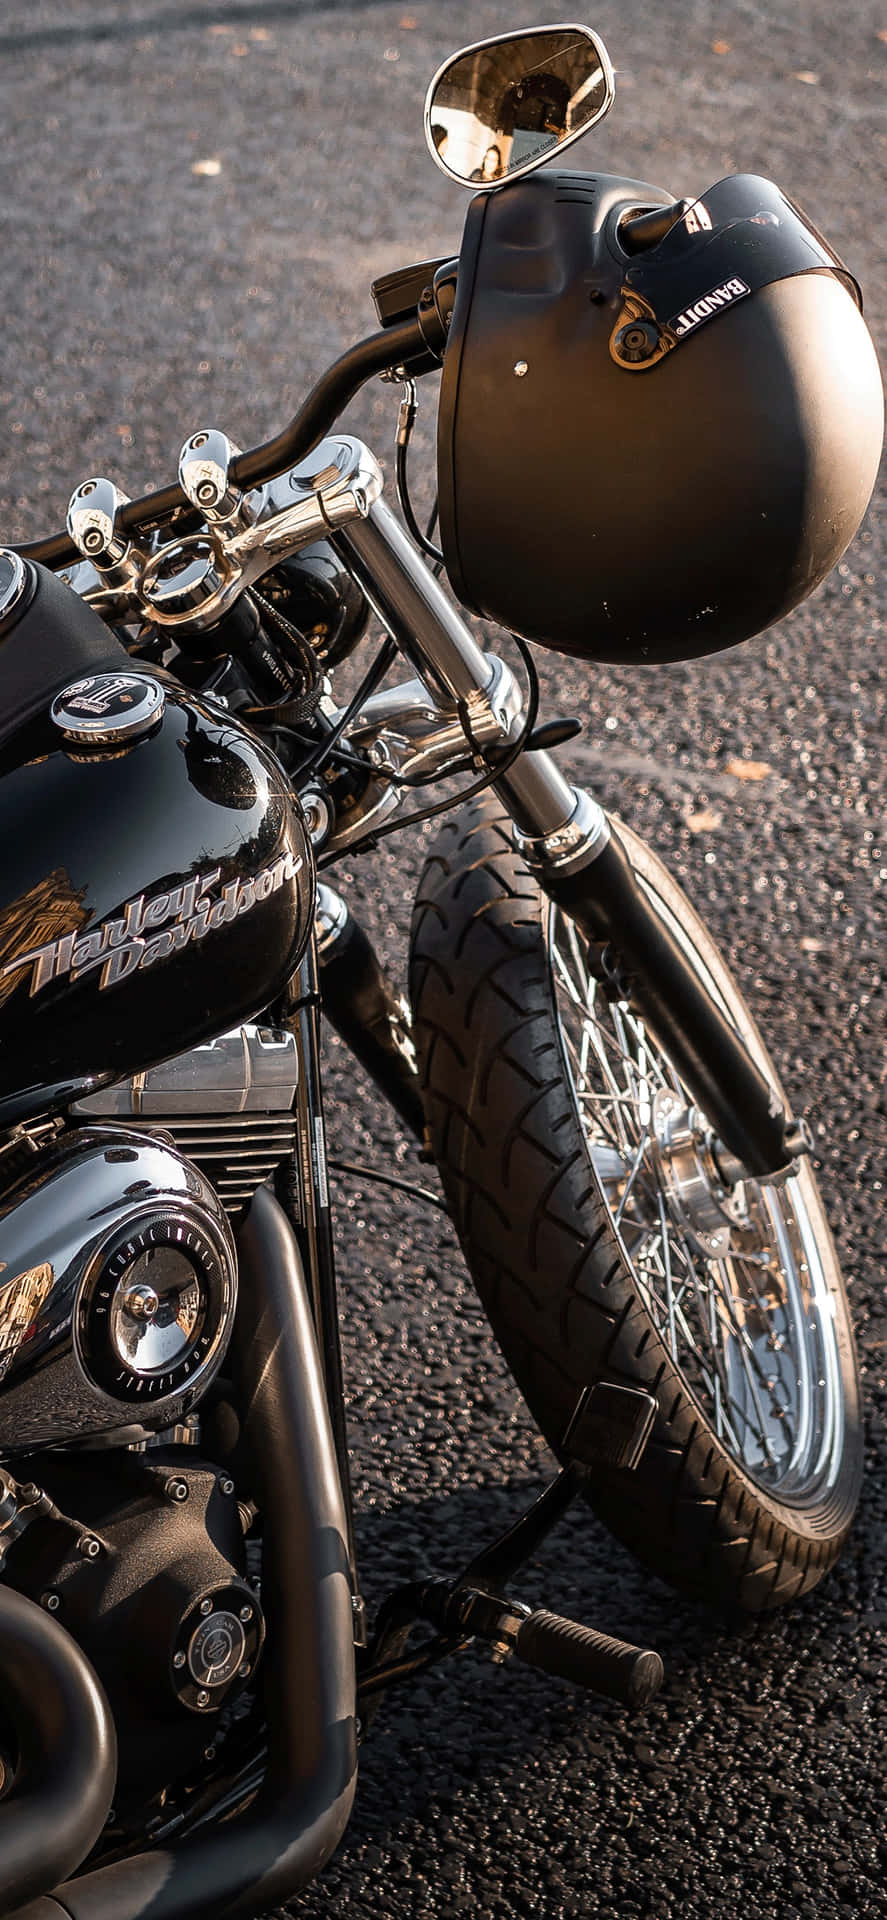 Papelde Parede Com Fundo Da Harley Davidson E Capacete